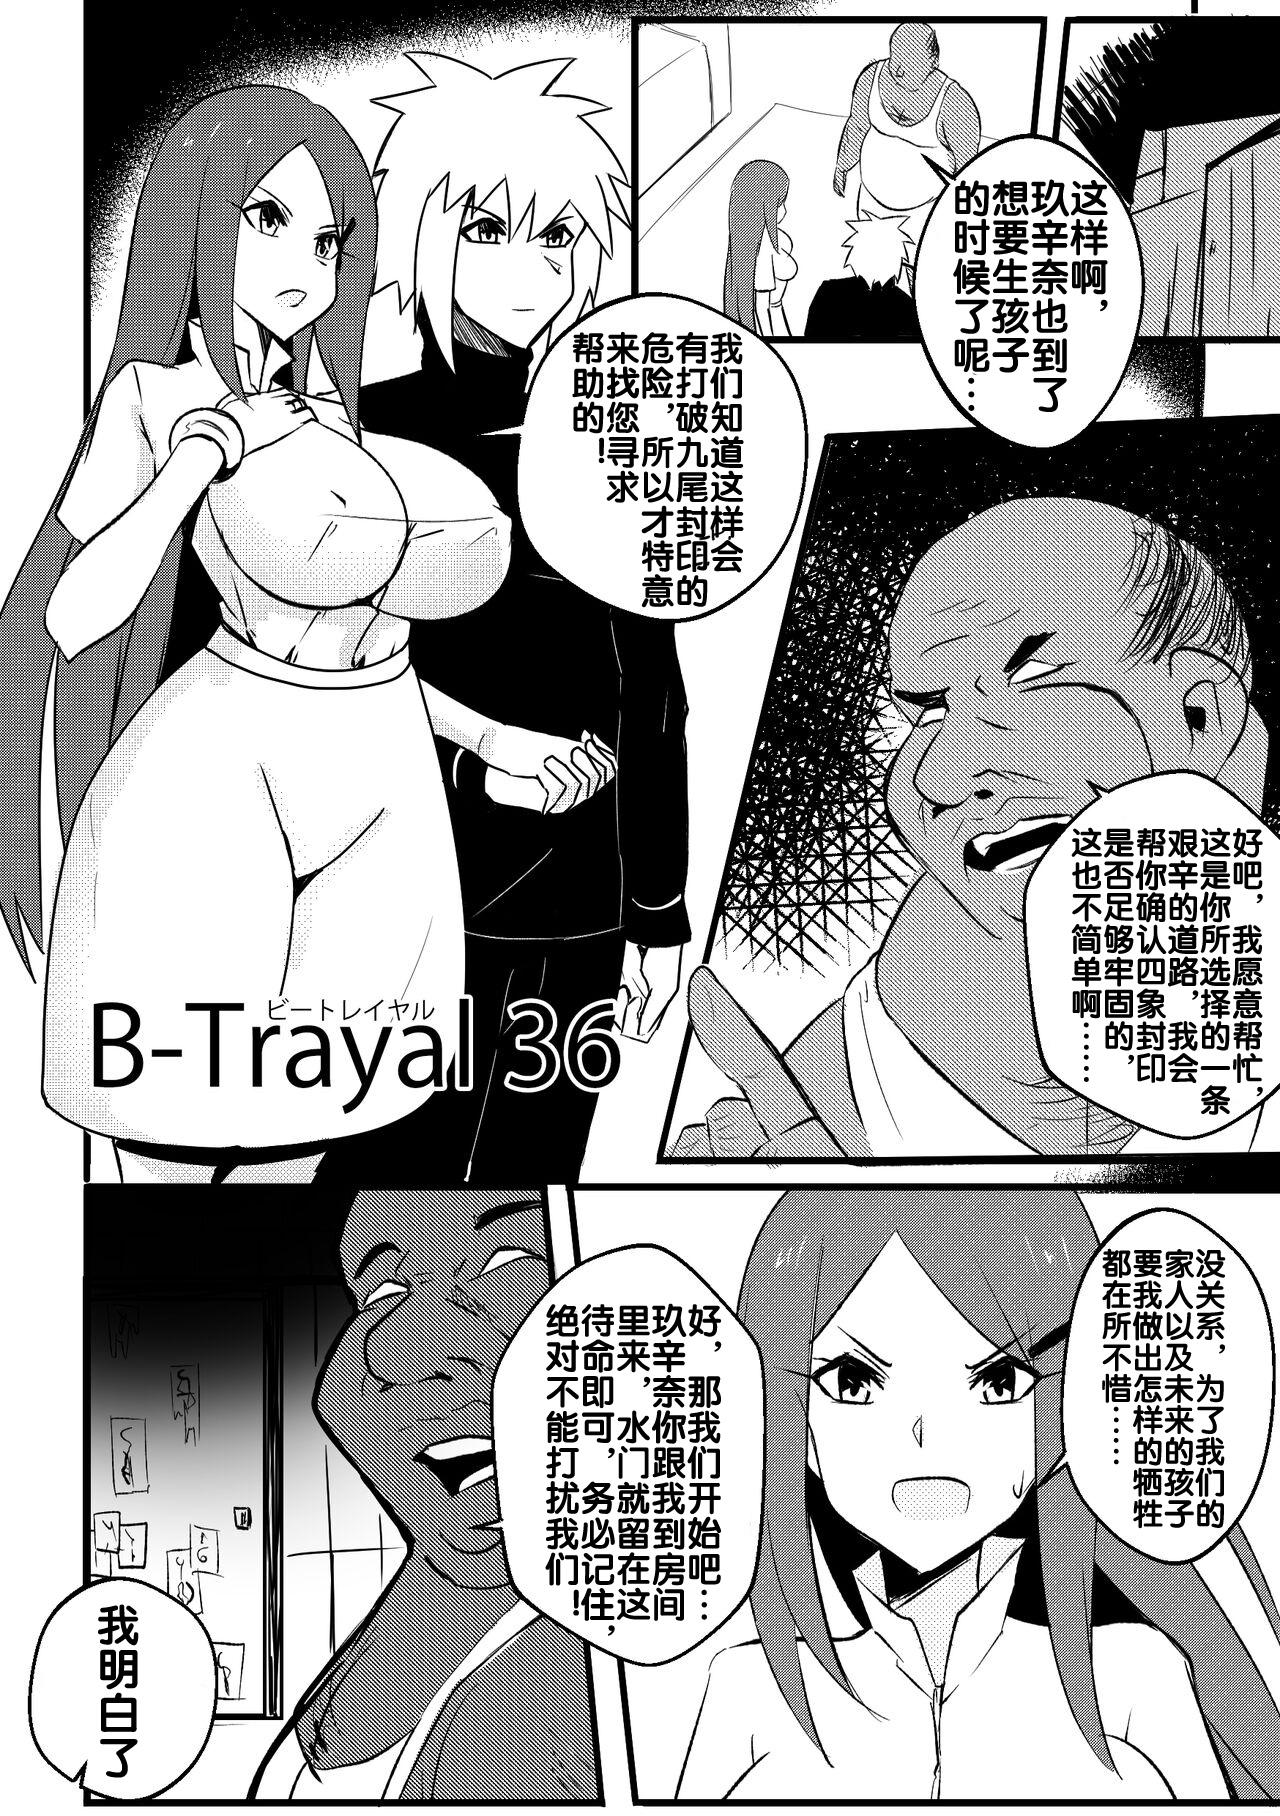 Tesao B-Trayal 36 旋涡玖辛奈 - Naruto Tan - Page 3